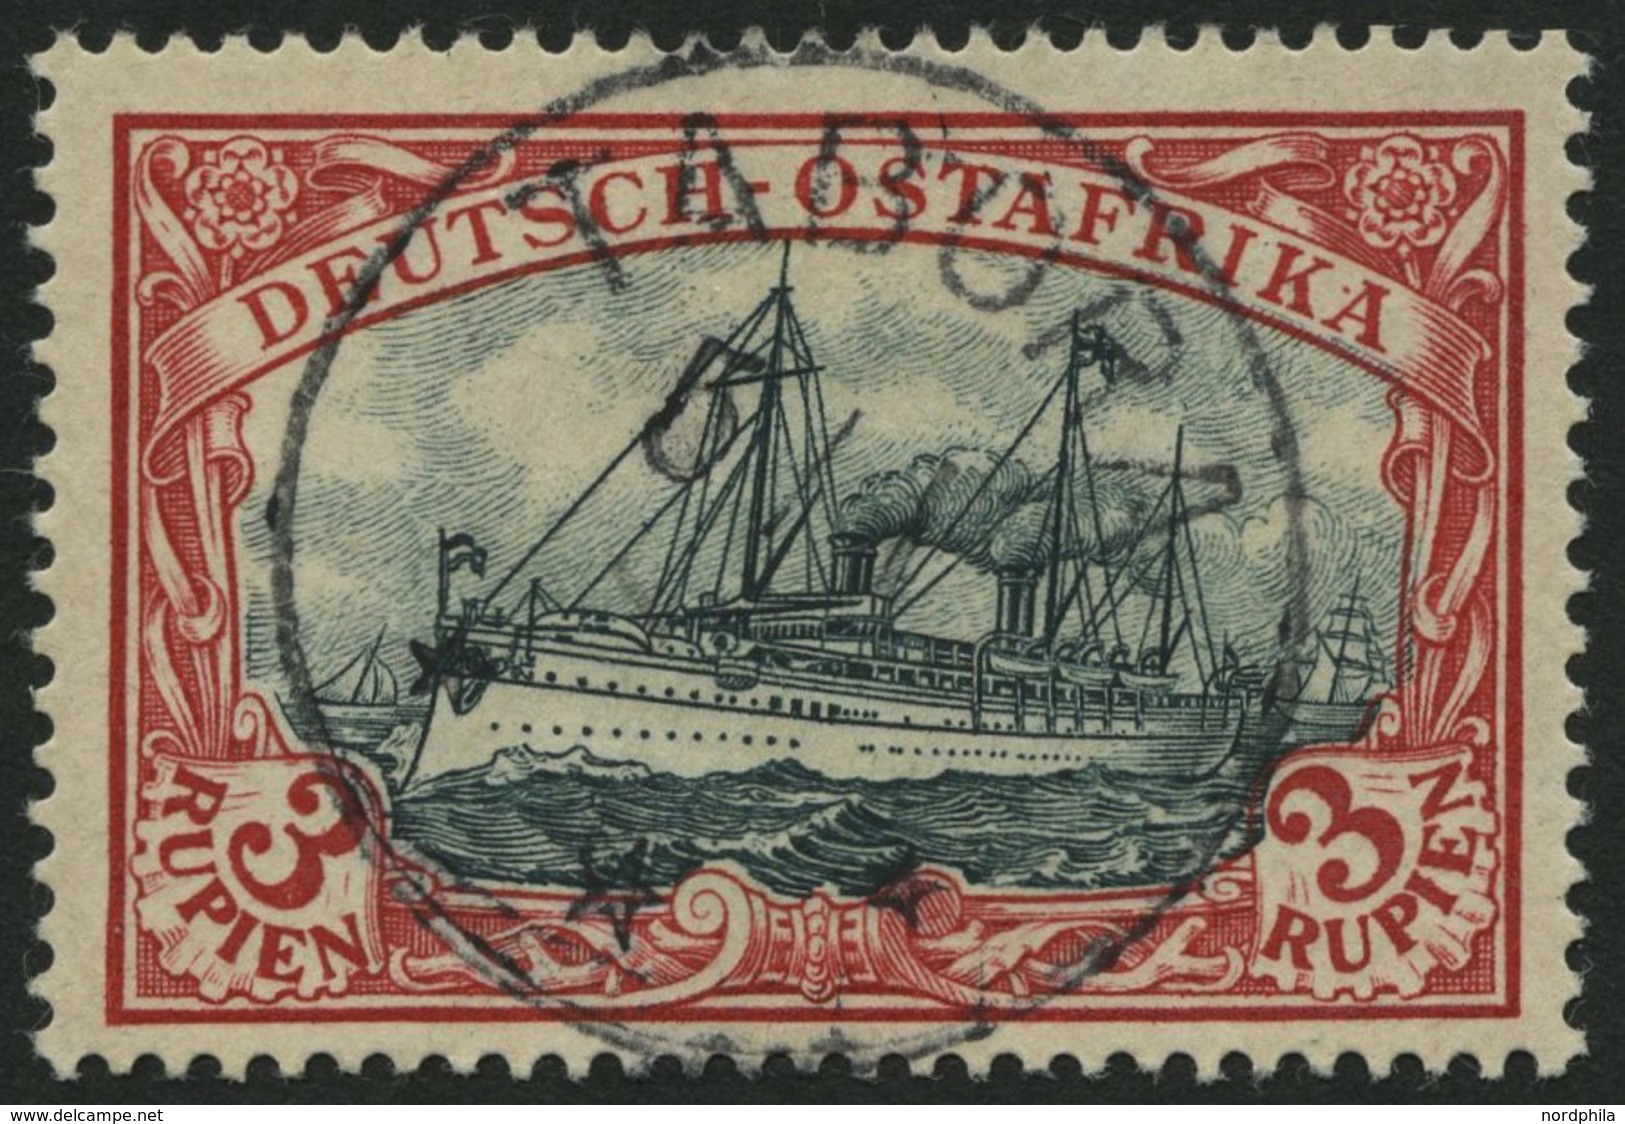 DEUTSCH-OSTAFRIKA 21b O, 1901, 3 R. Dunkelrot/grünschwarz, Ohne Wz., Stempel TABORA (ohne Jahreszahl), Pracht - Afrique Orientale